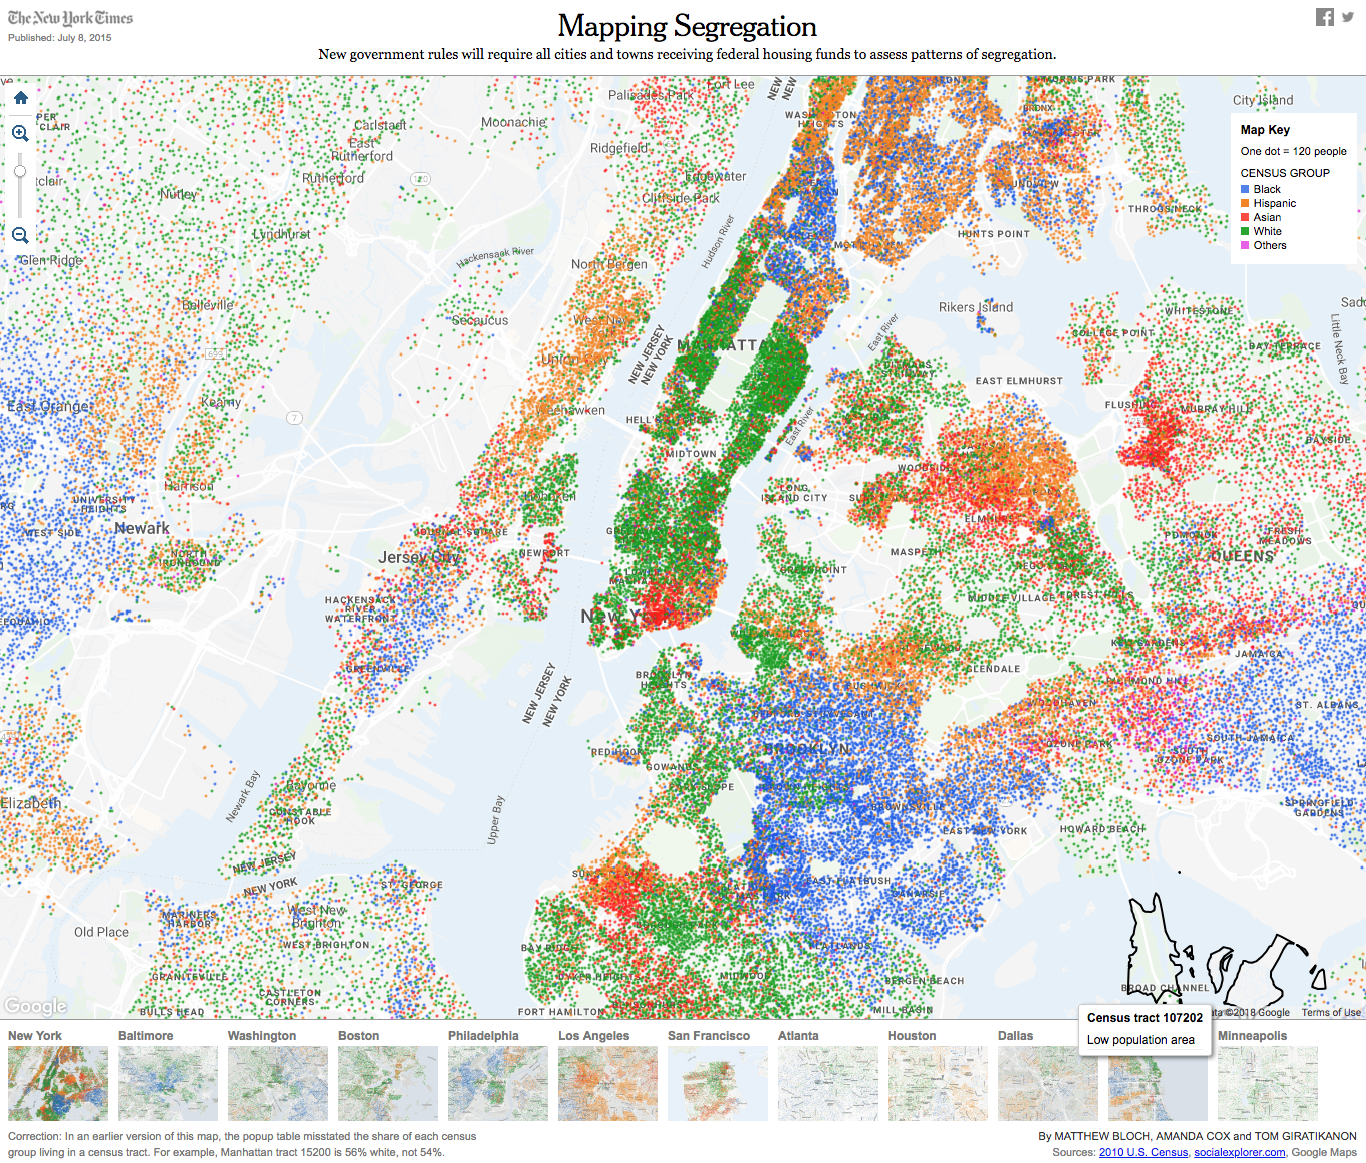 Mapas da segregação racial nos Estados Unidos - New York Times